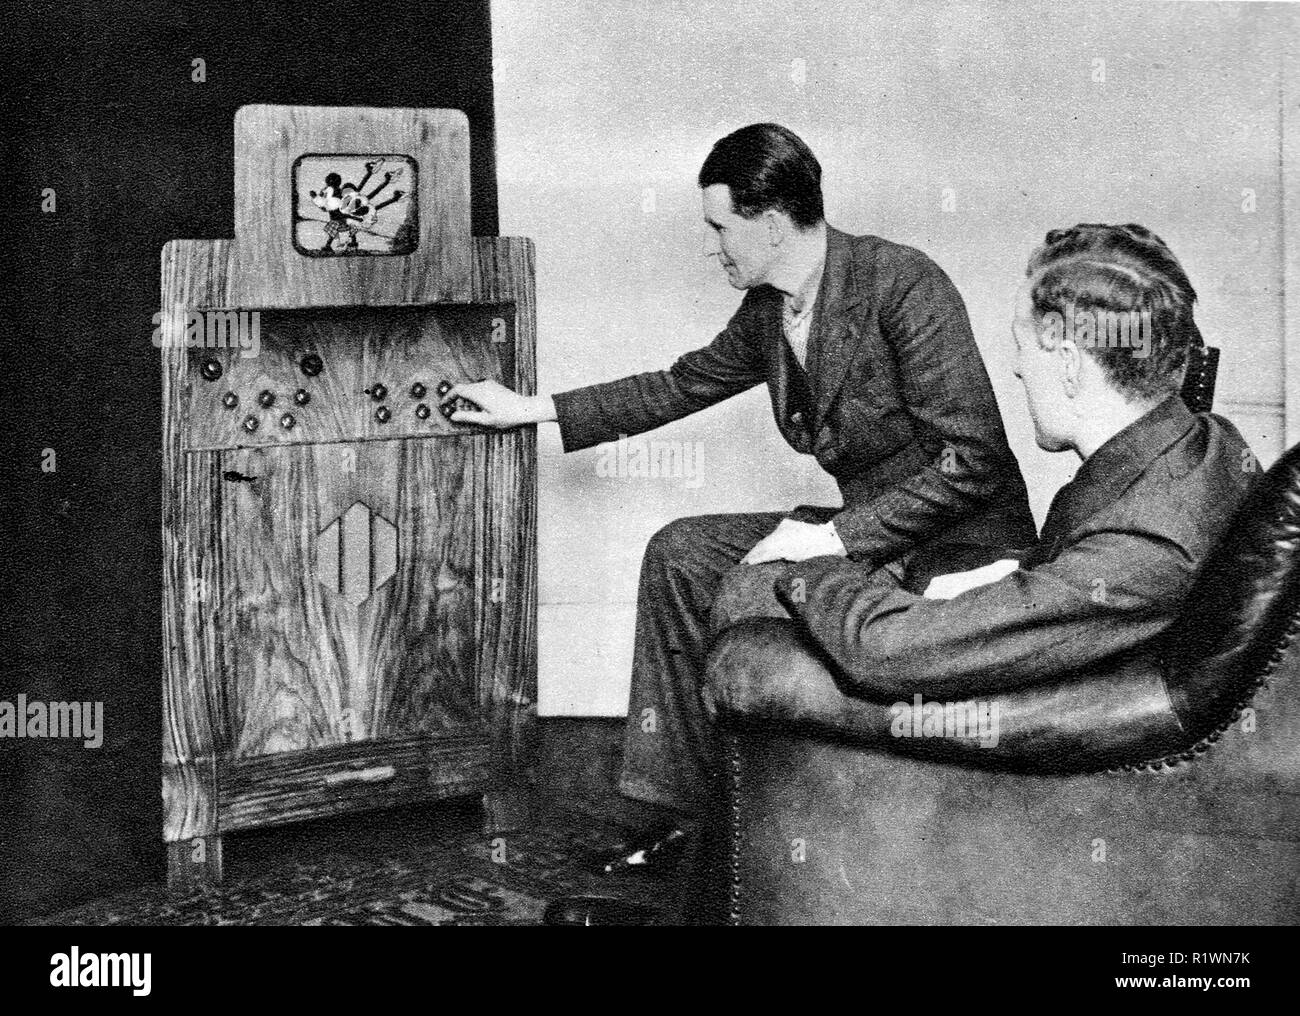 Un 1935 fotografia che mostra i primi giorni della televisione in Gran Bretagna - due uomini in abiti di sedersi a guardare Mickey Mouse riproduzione di cornamuse sul loro piccolo televisore alloggiato all' interno di un grande armadio in legno Foto Stock